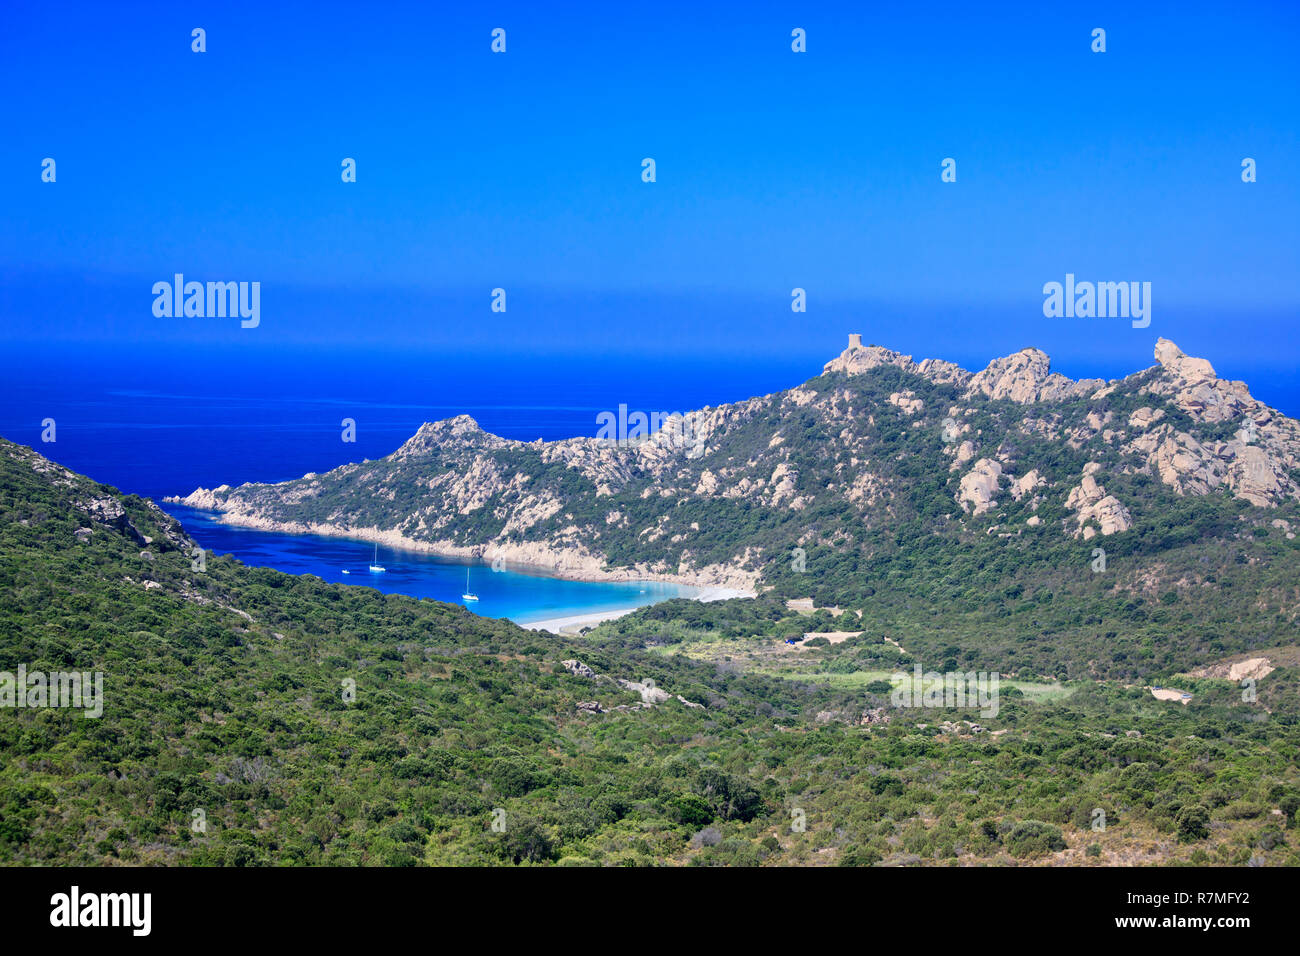 Bucht von Roccapina auf der Insel Korsika, Frankreich. Auf dem Berg ein genuesischer Turm und rechts einen Stein wie ein Löwe. Segelboote Verankerung Stockfoto